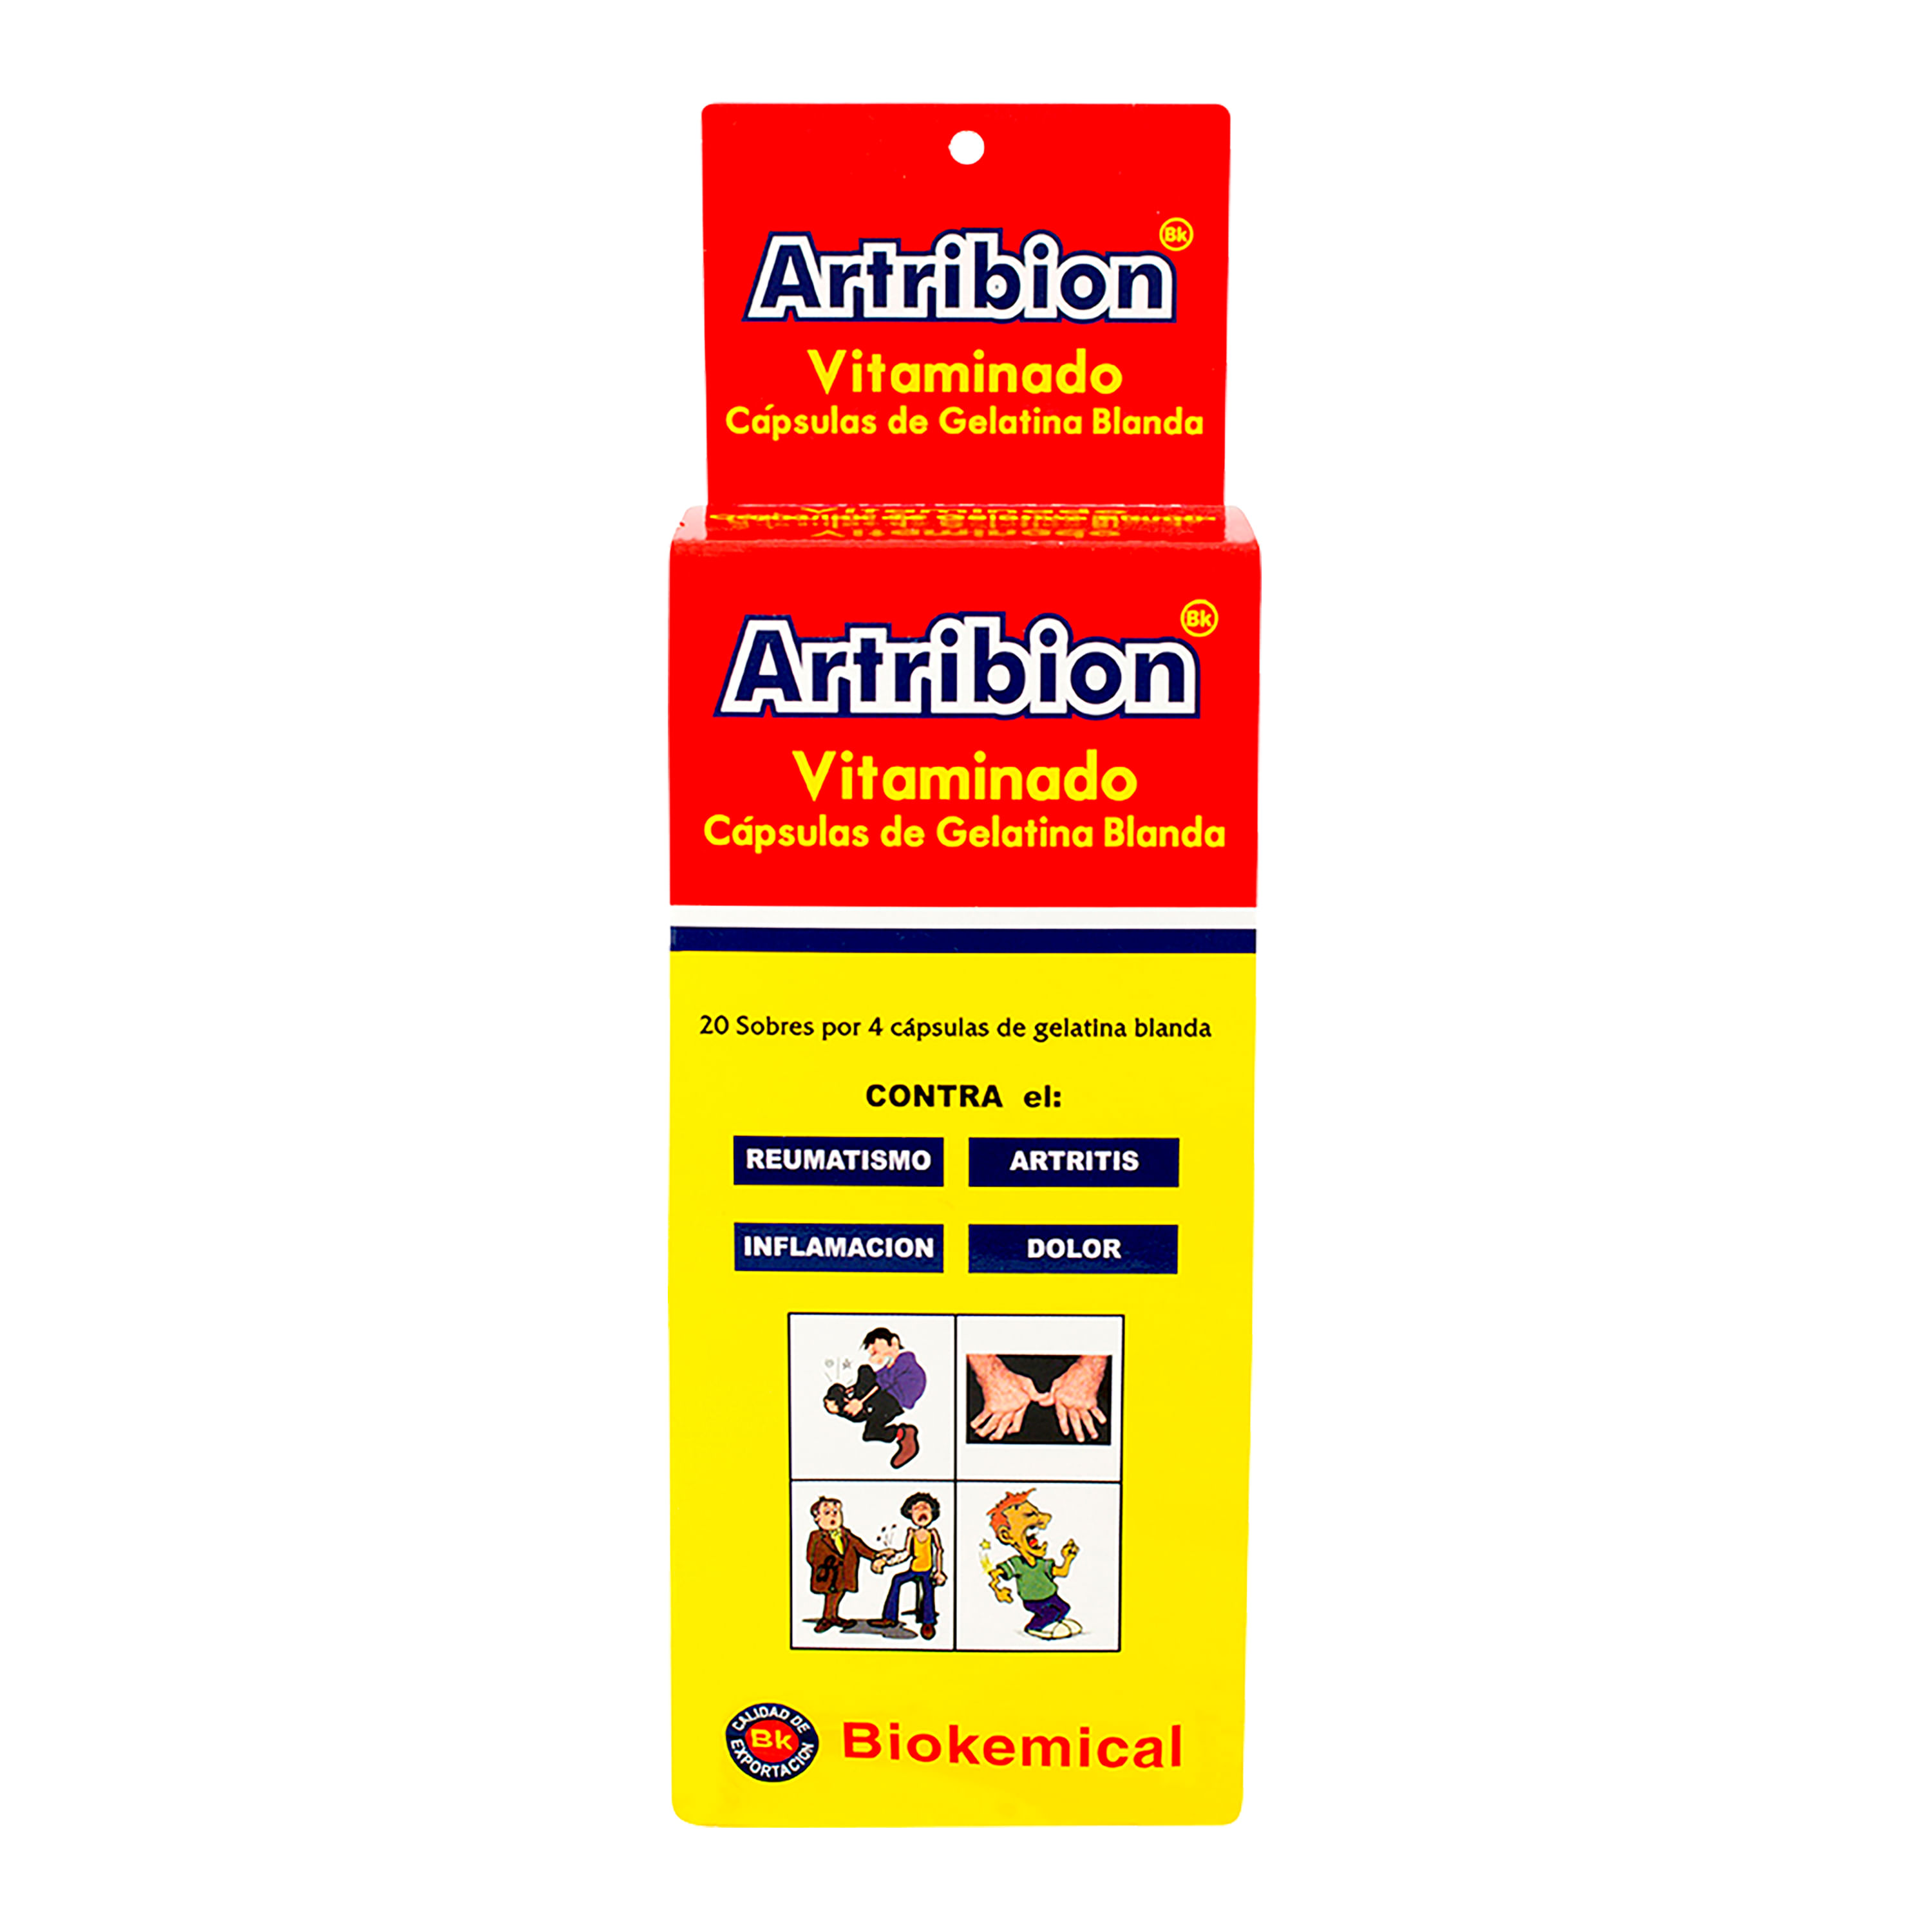 Sartribion-Vitaminado-20Sobres-4Caps-1-31271